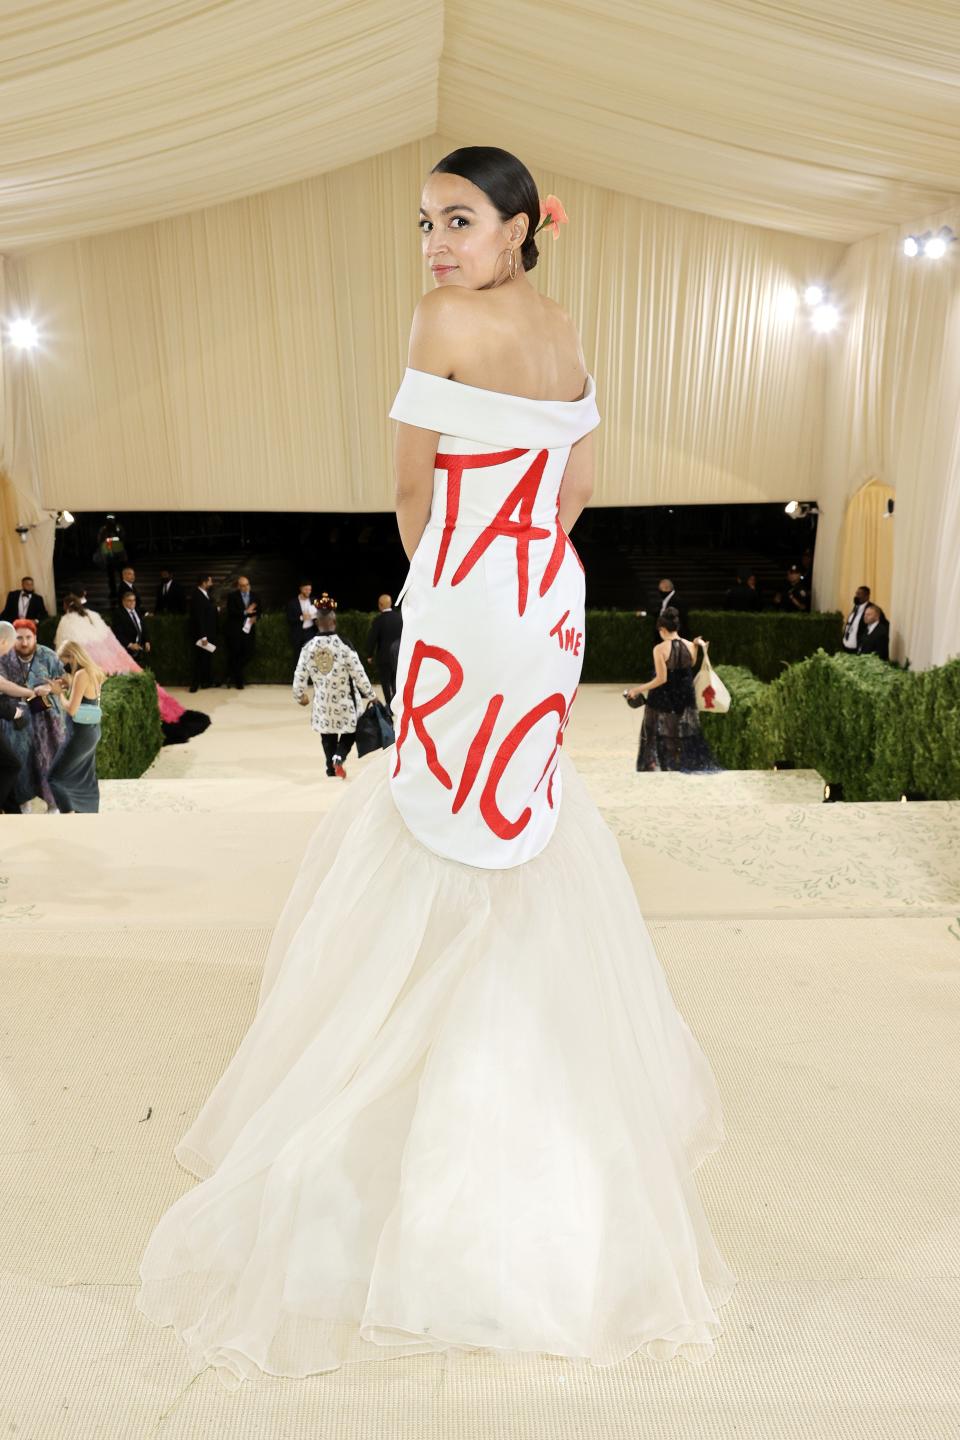 AOC's “Tax the Rich” Dress